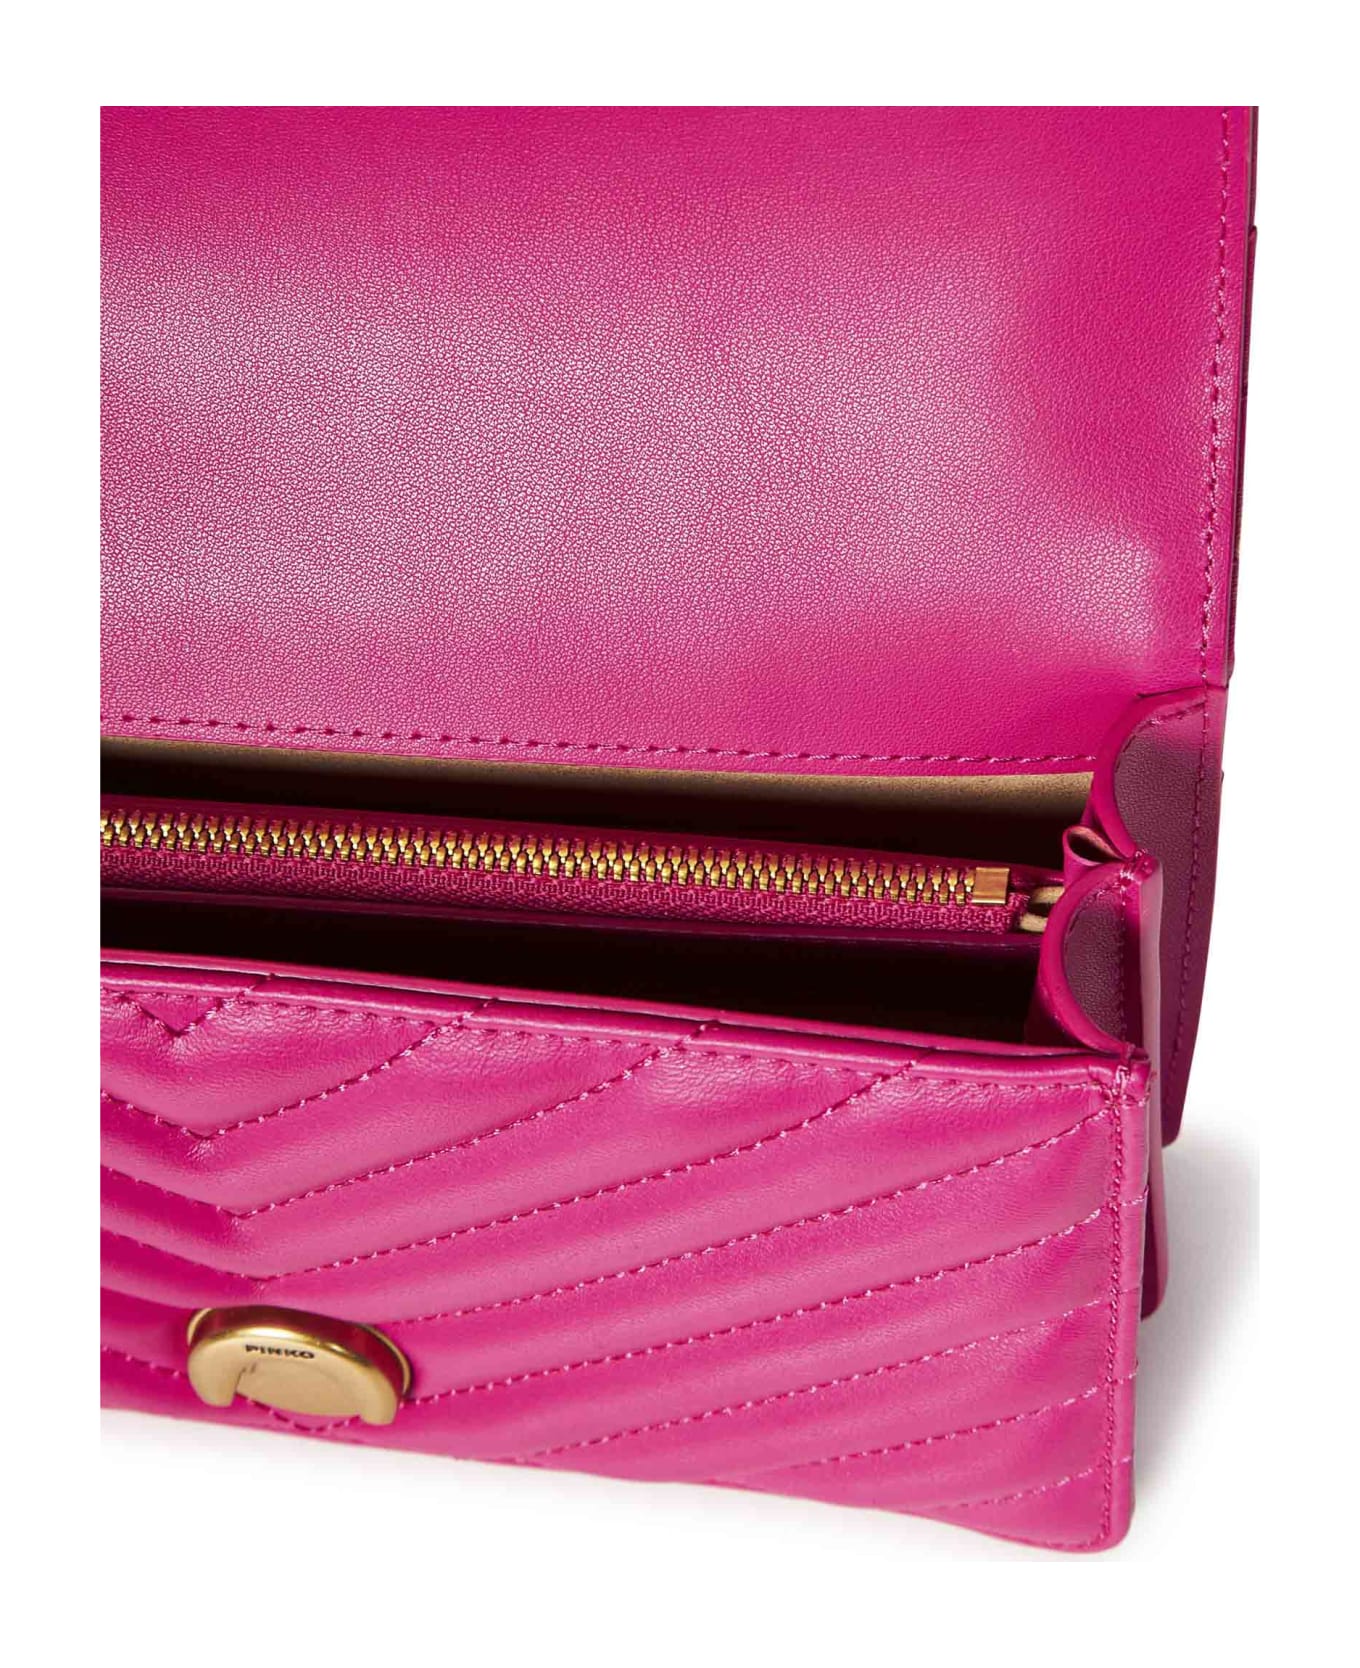 Pinko Mini Love Bag One Chevron Shoulder Bag - Fuchsia